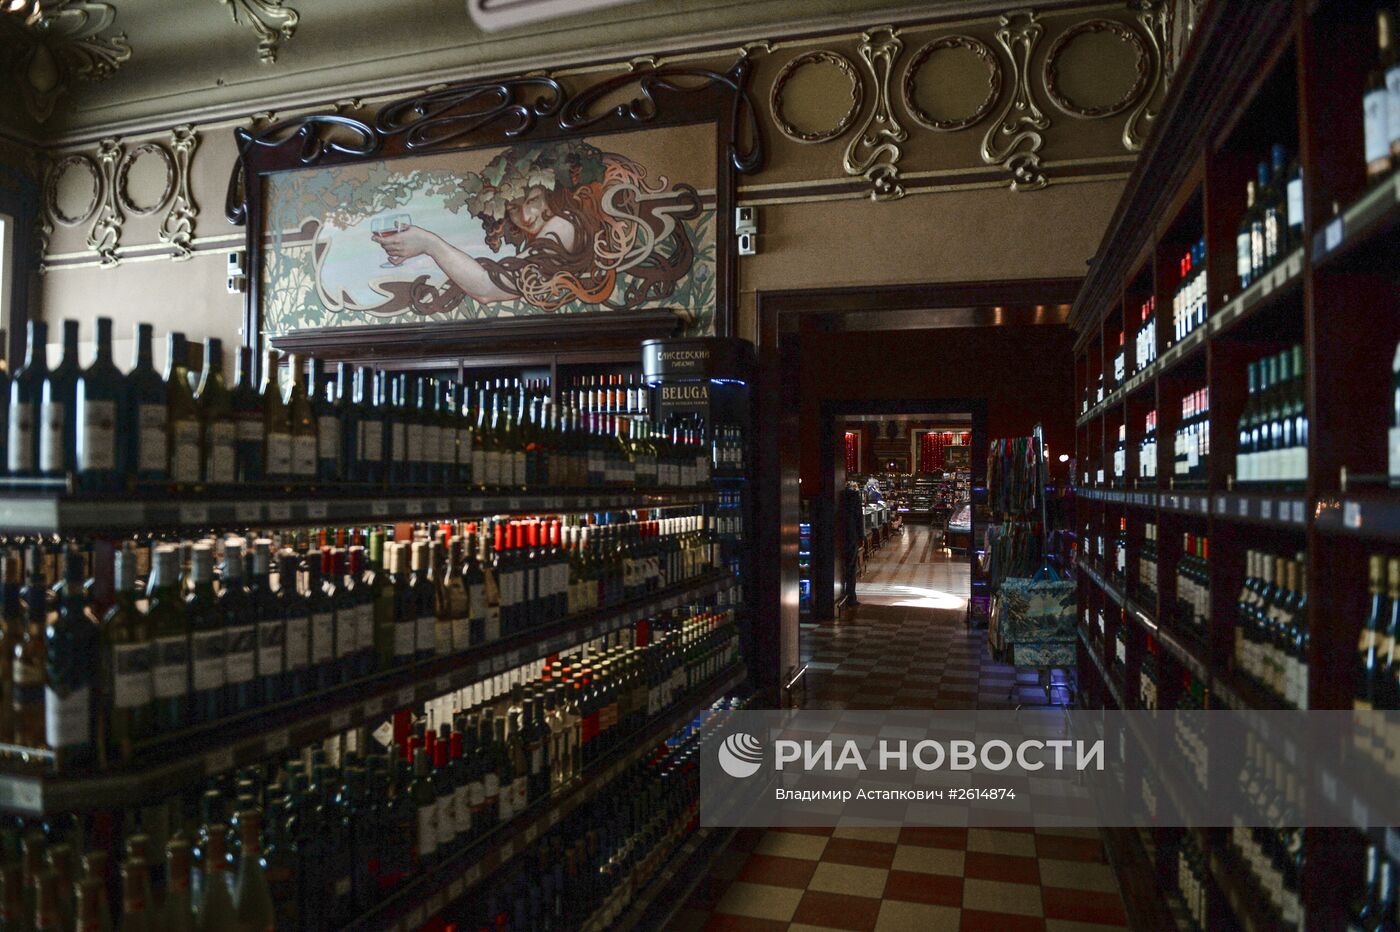 Елисеевский магазин в Москве